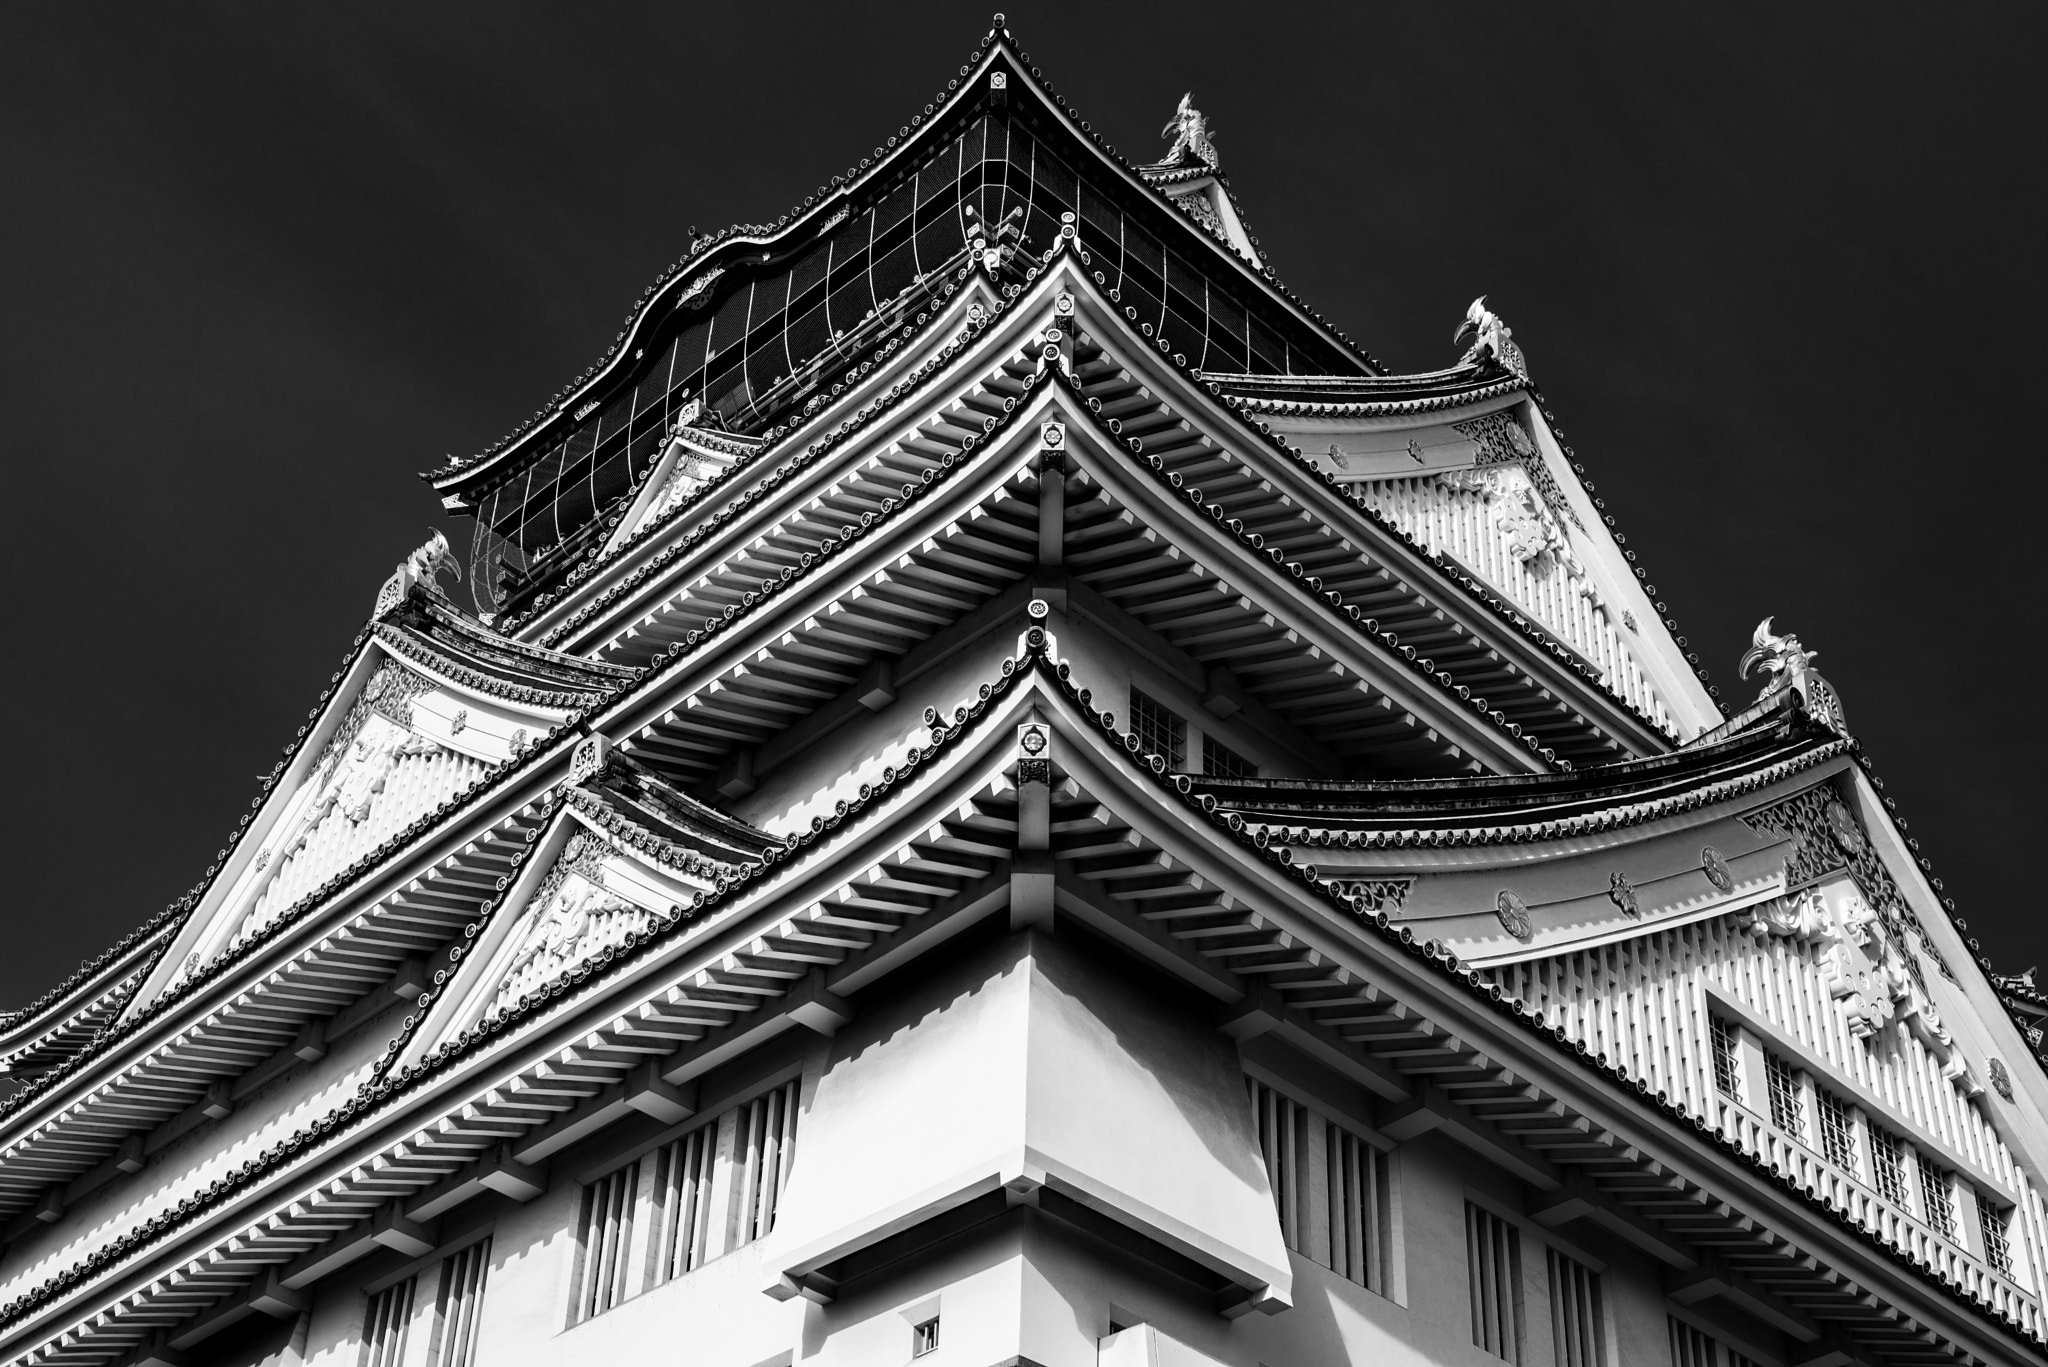 Osaka Castle (大阪城, Ōsakajō)